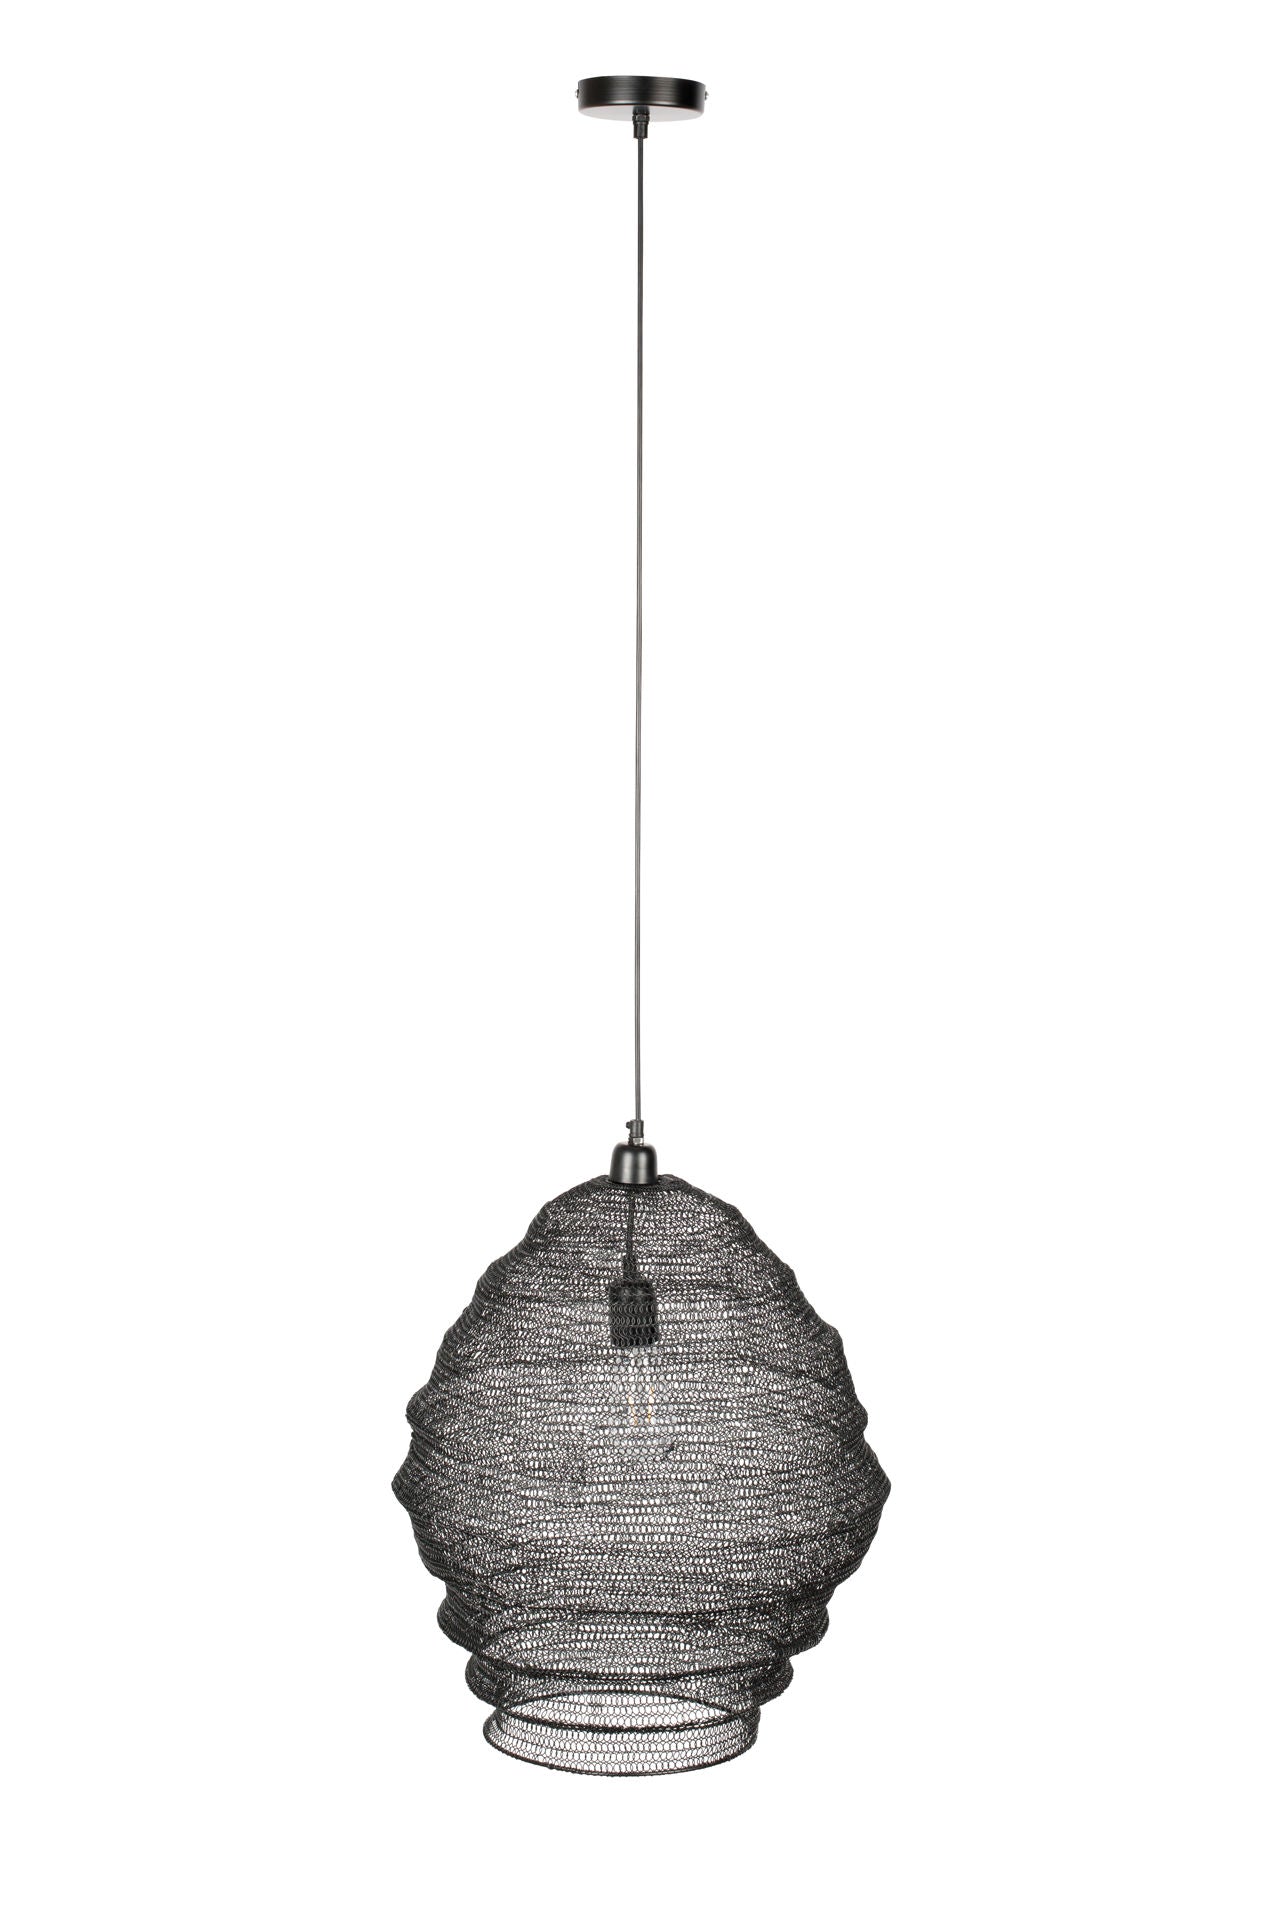 Nancy's Minooka Hanglamp - Modern - Zwart - IJzer, Pvc - 48 cm x 48 cm x 158 cm